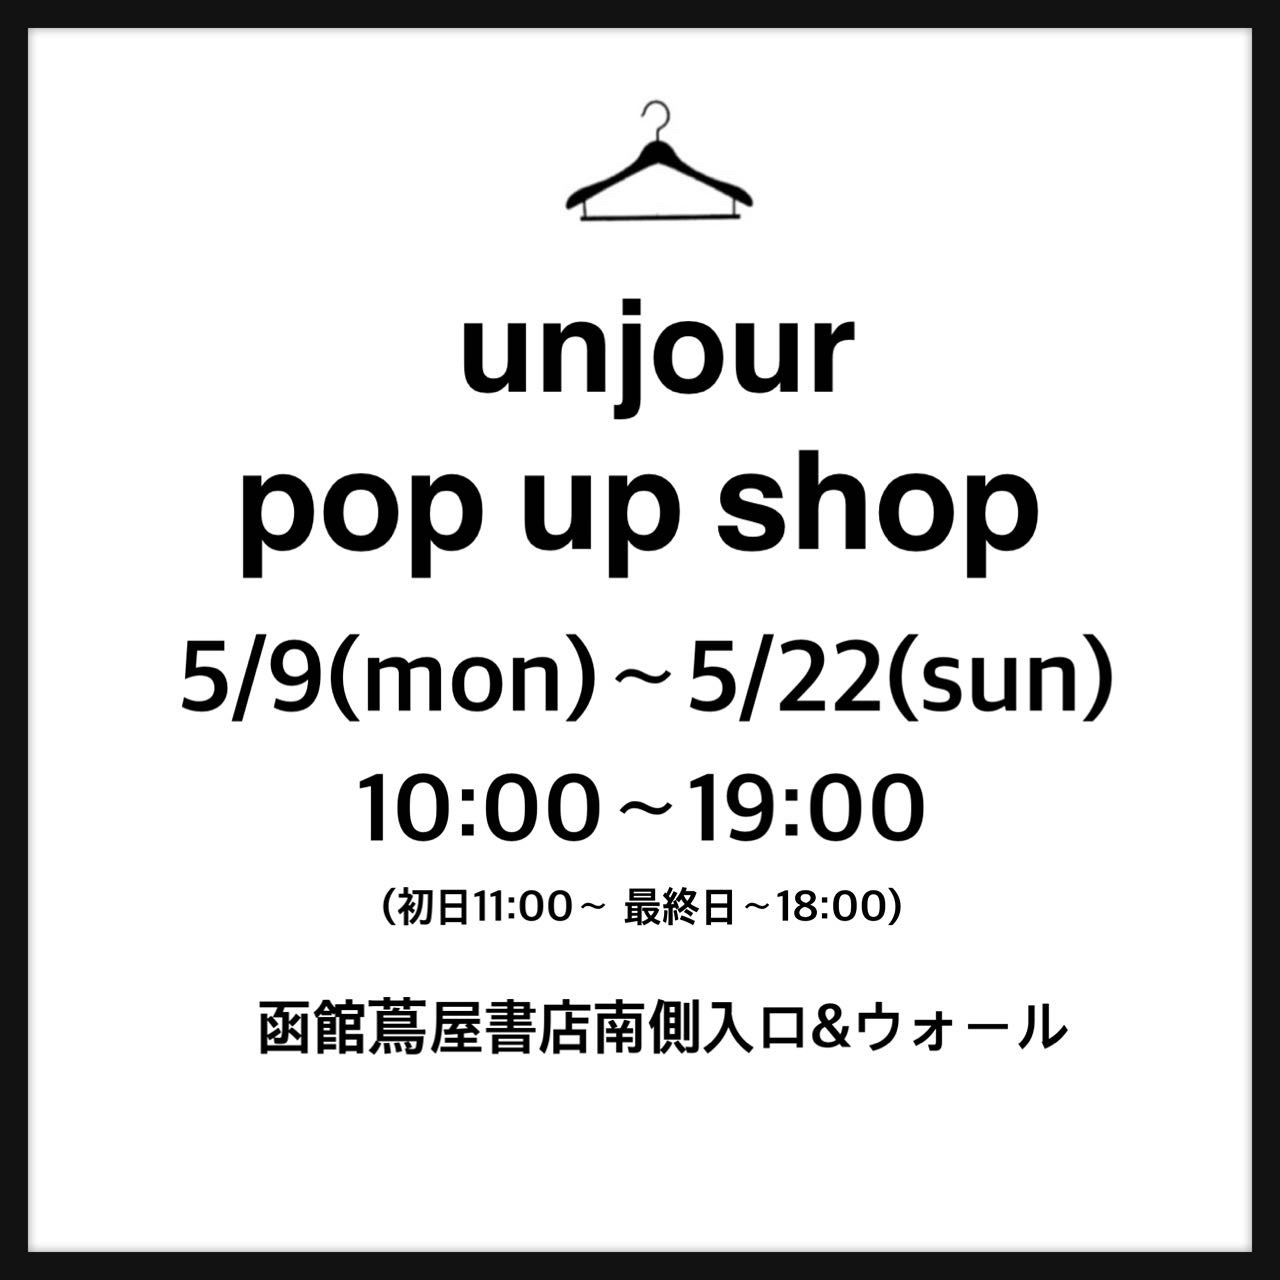 函館蔦屋書店pop up shop!_b0306860_08413058.jpg